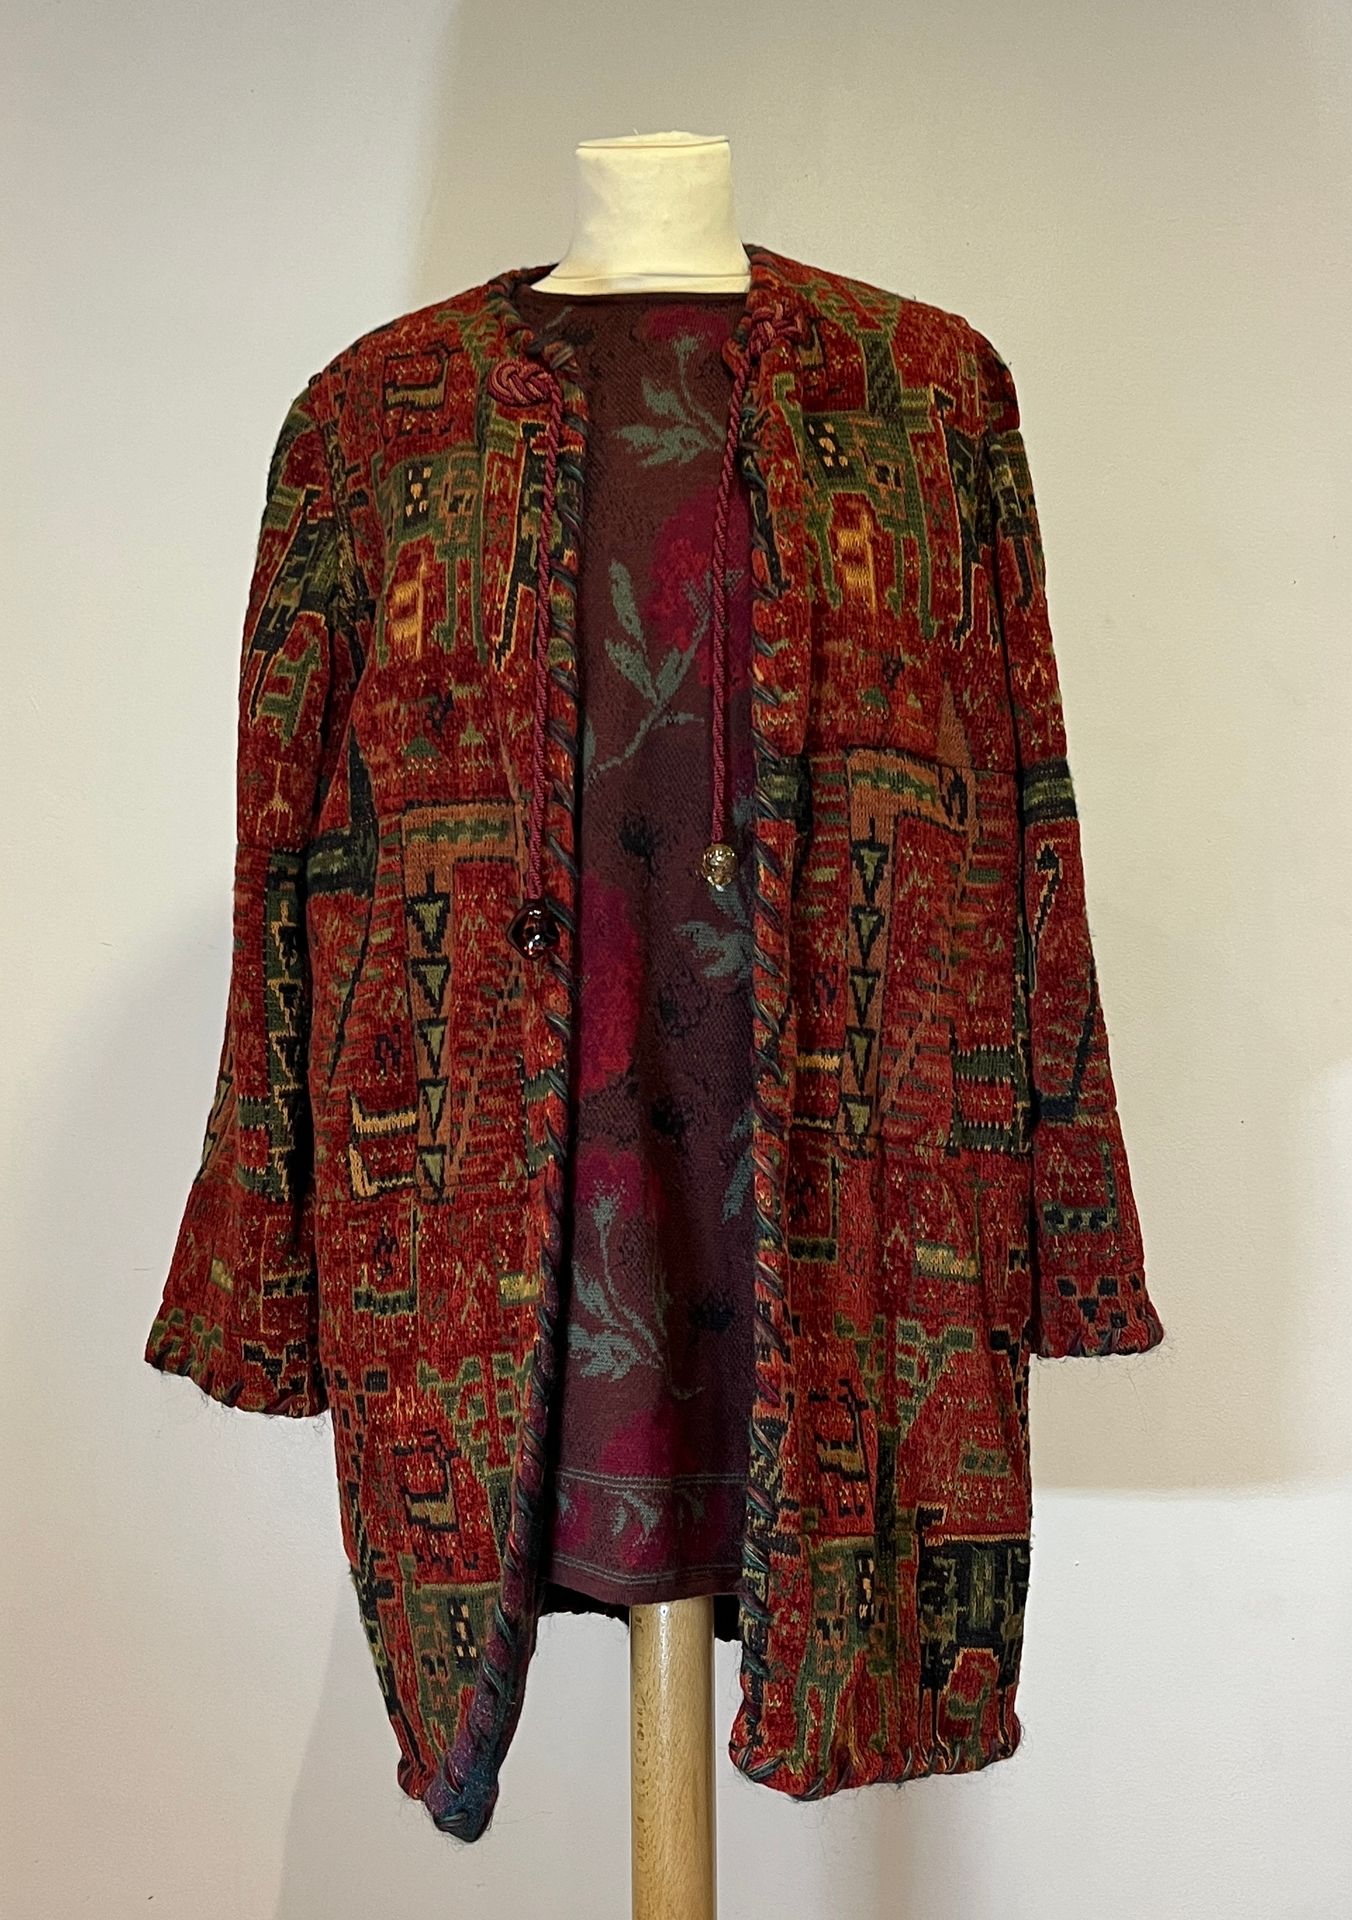 Null EMMANUEL UNGARO - 长外套，针织和雪尼尔材质，带有民族图案，领口处有领带。尺寸42。一件带有花纹的棕色针织上衣。